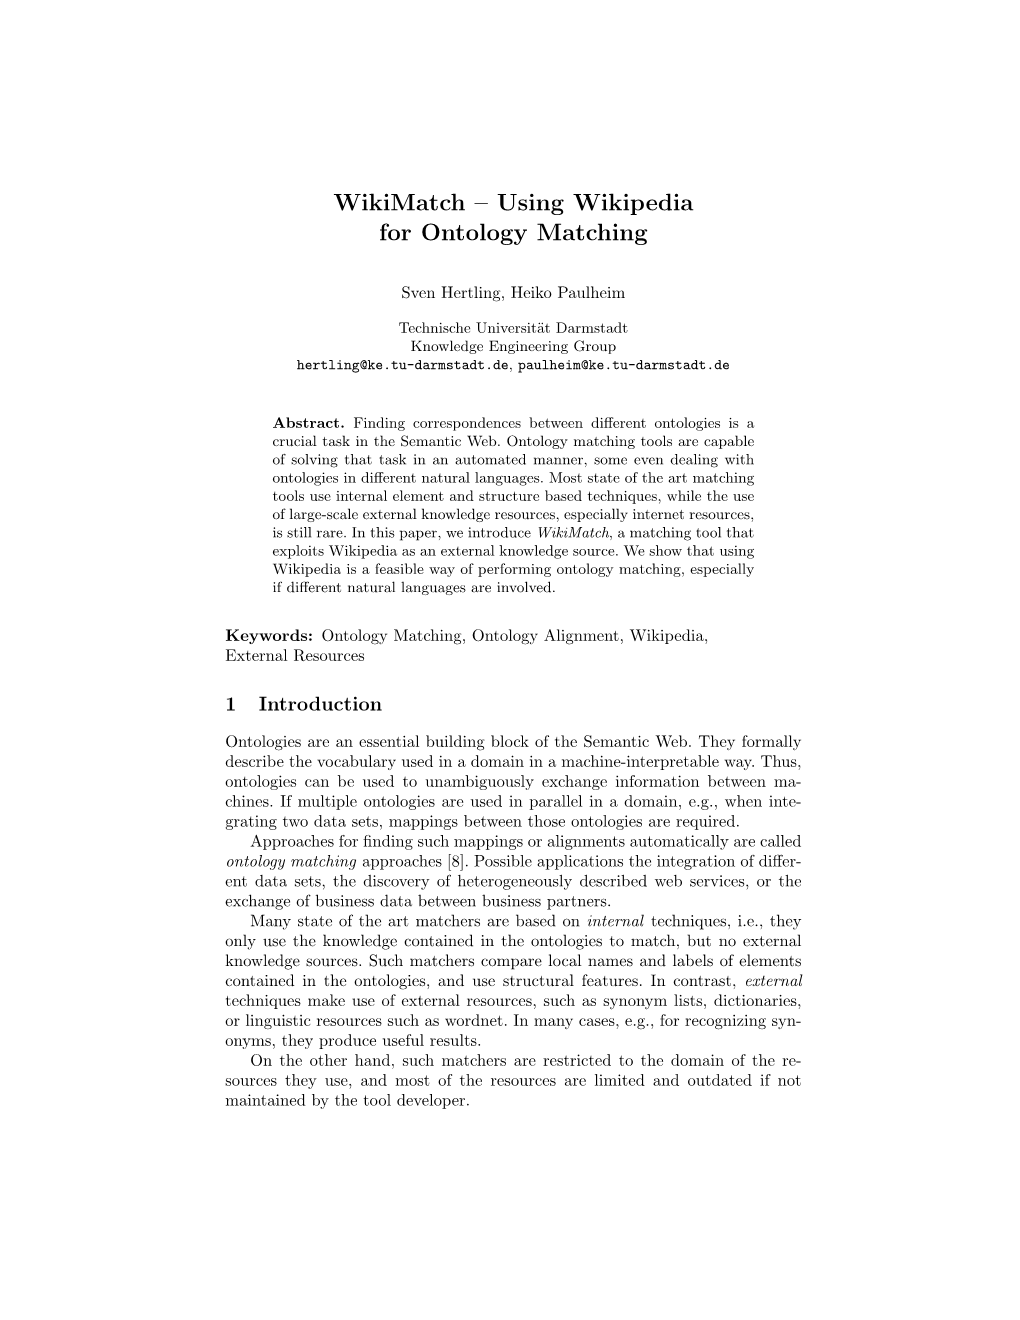 Wikimatch – Using Wikipedia for Ontology Matching